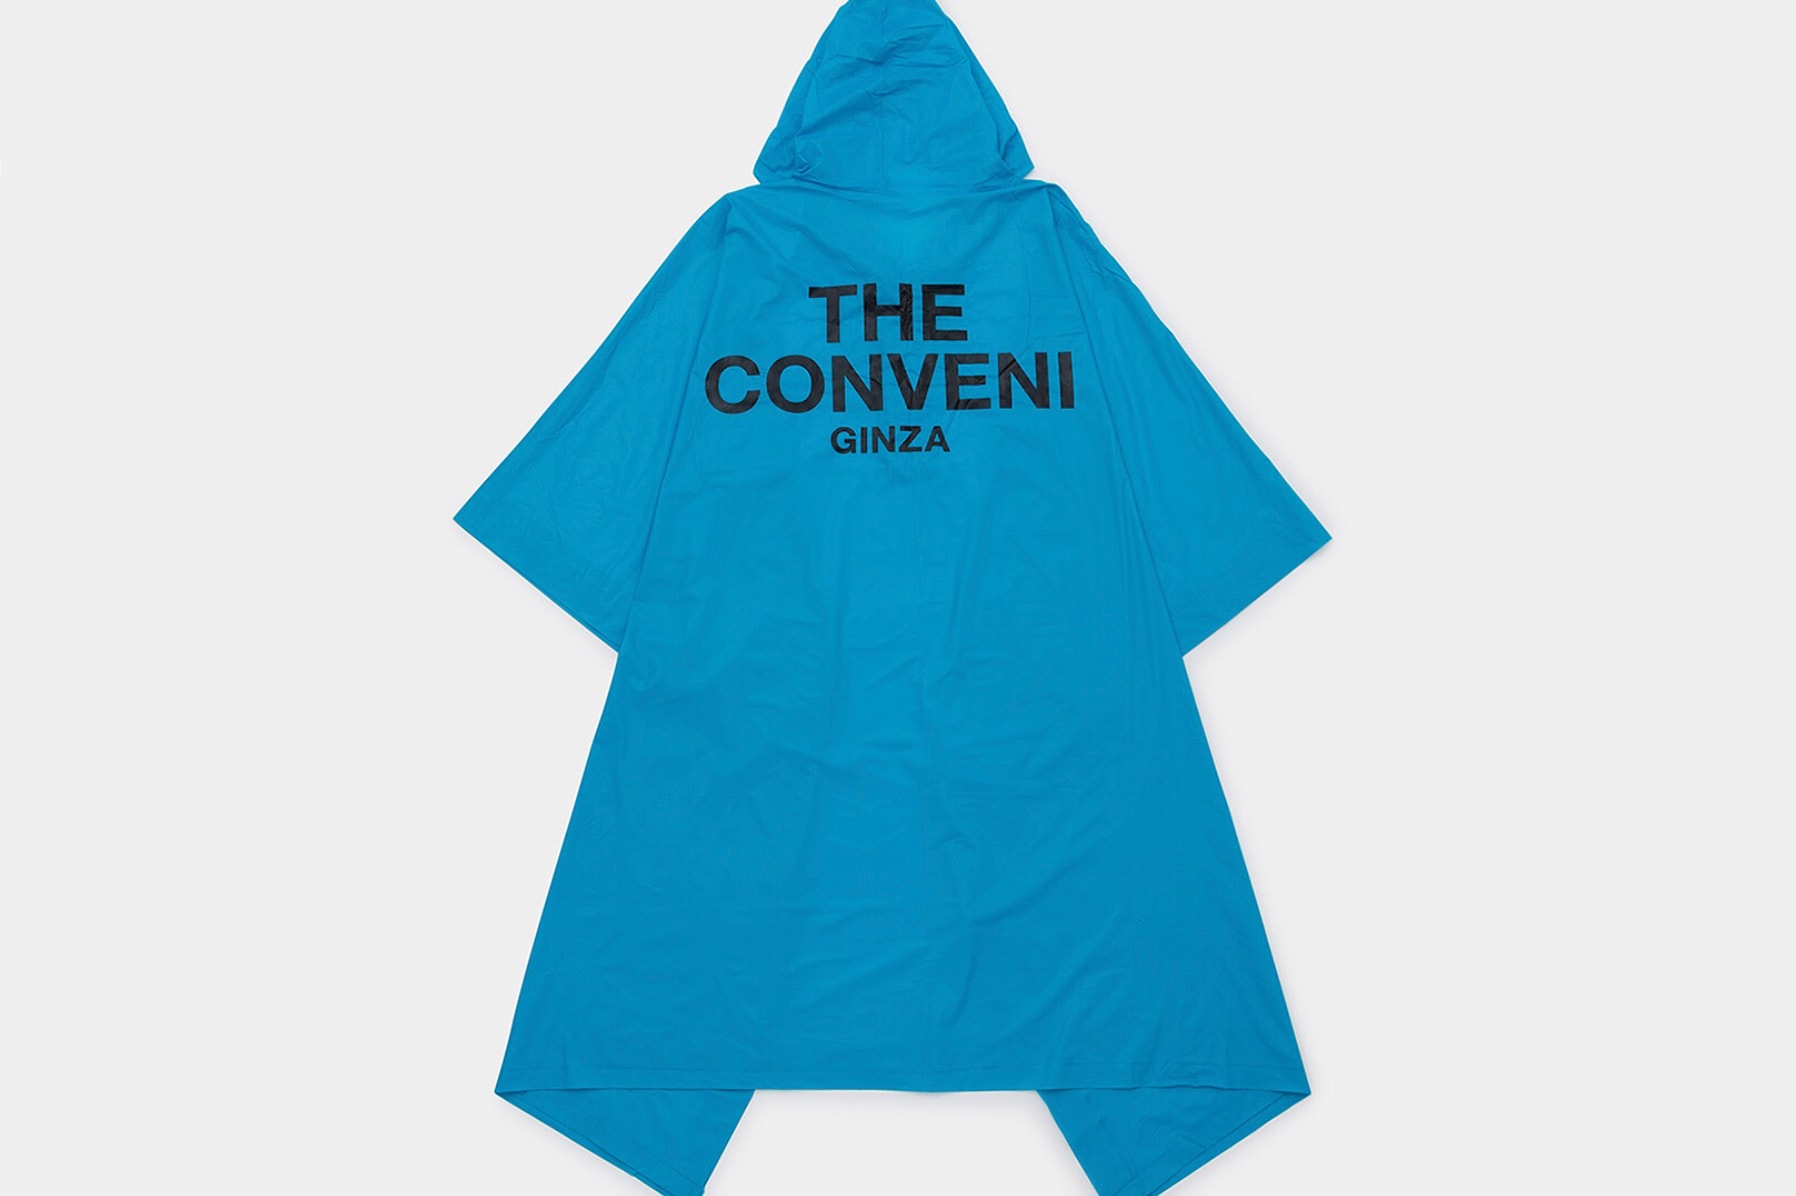 藤原浩最新企劃「THE CONVENI」開幕單品一覽